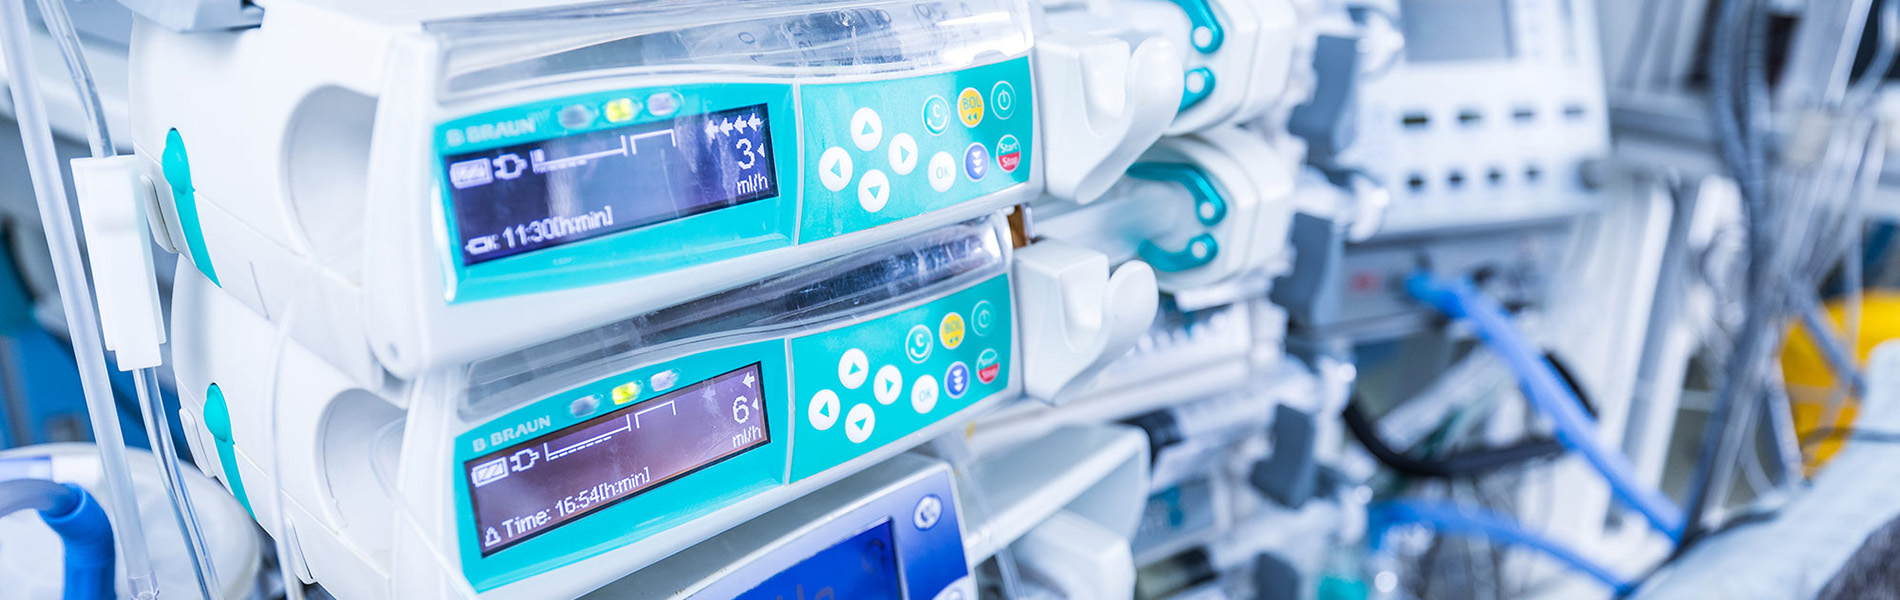 Bombas de infusión médicas Paragon-ID en hospital reflejando uso de tecnología avanzada y experiencia de usuario mejorada